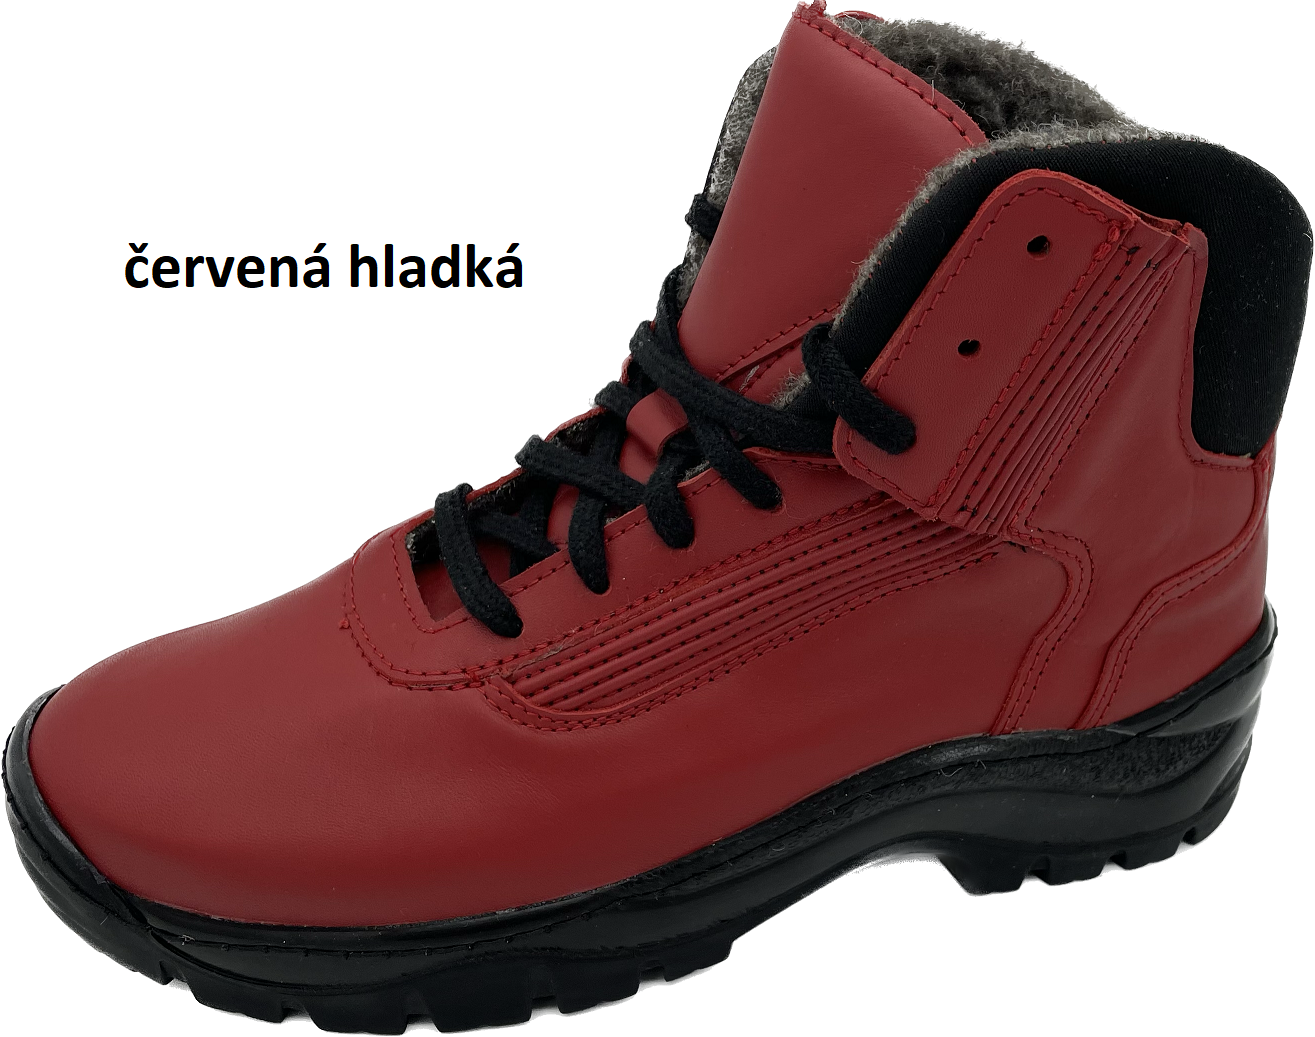 Boty Hanák TREKING Barva usně: červená hladká, Velikosti obuvi: 42